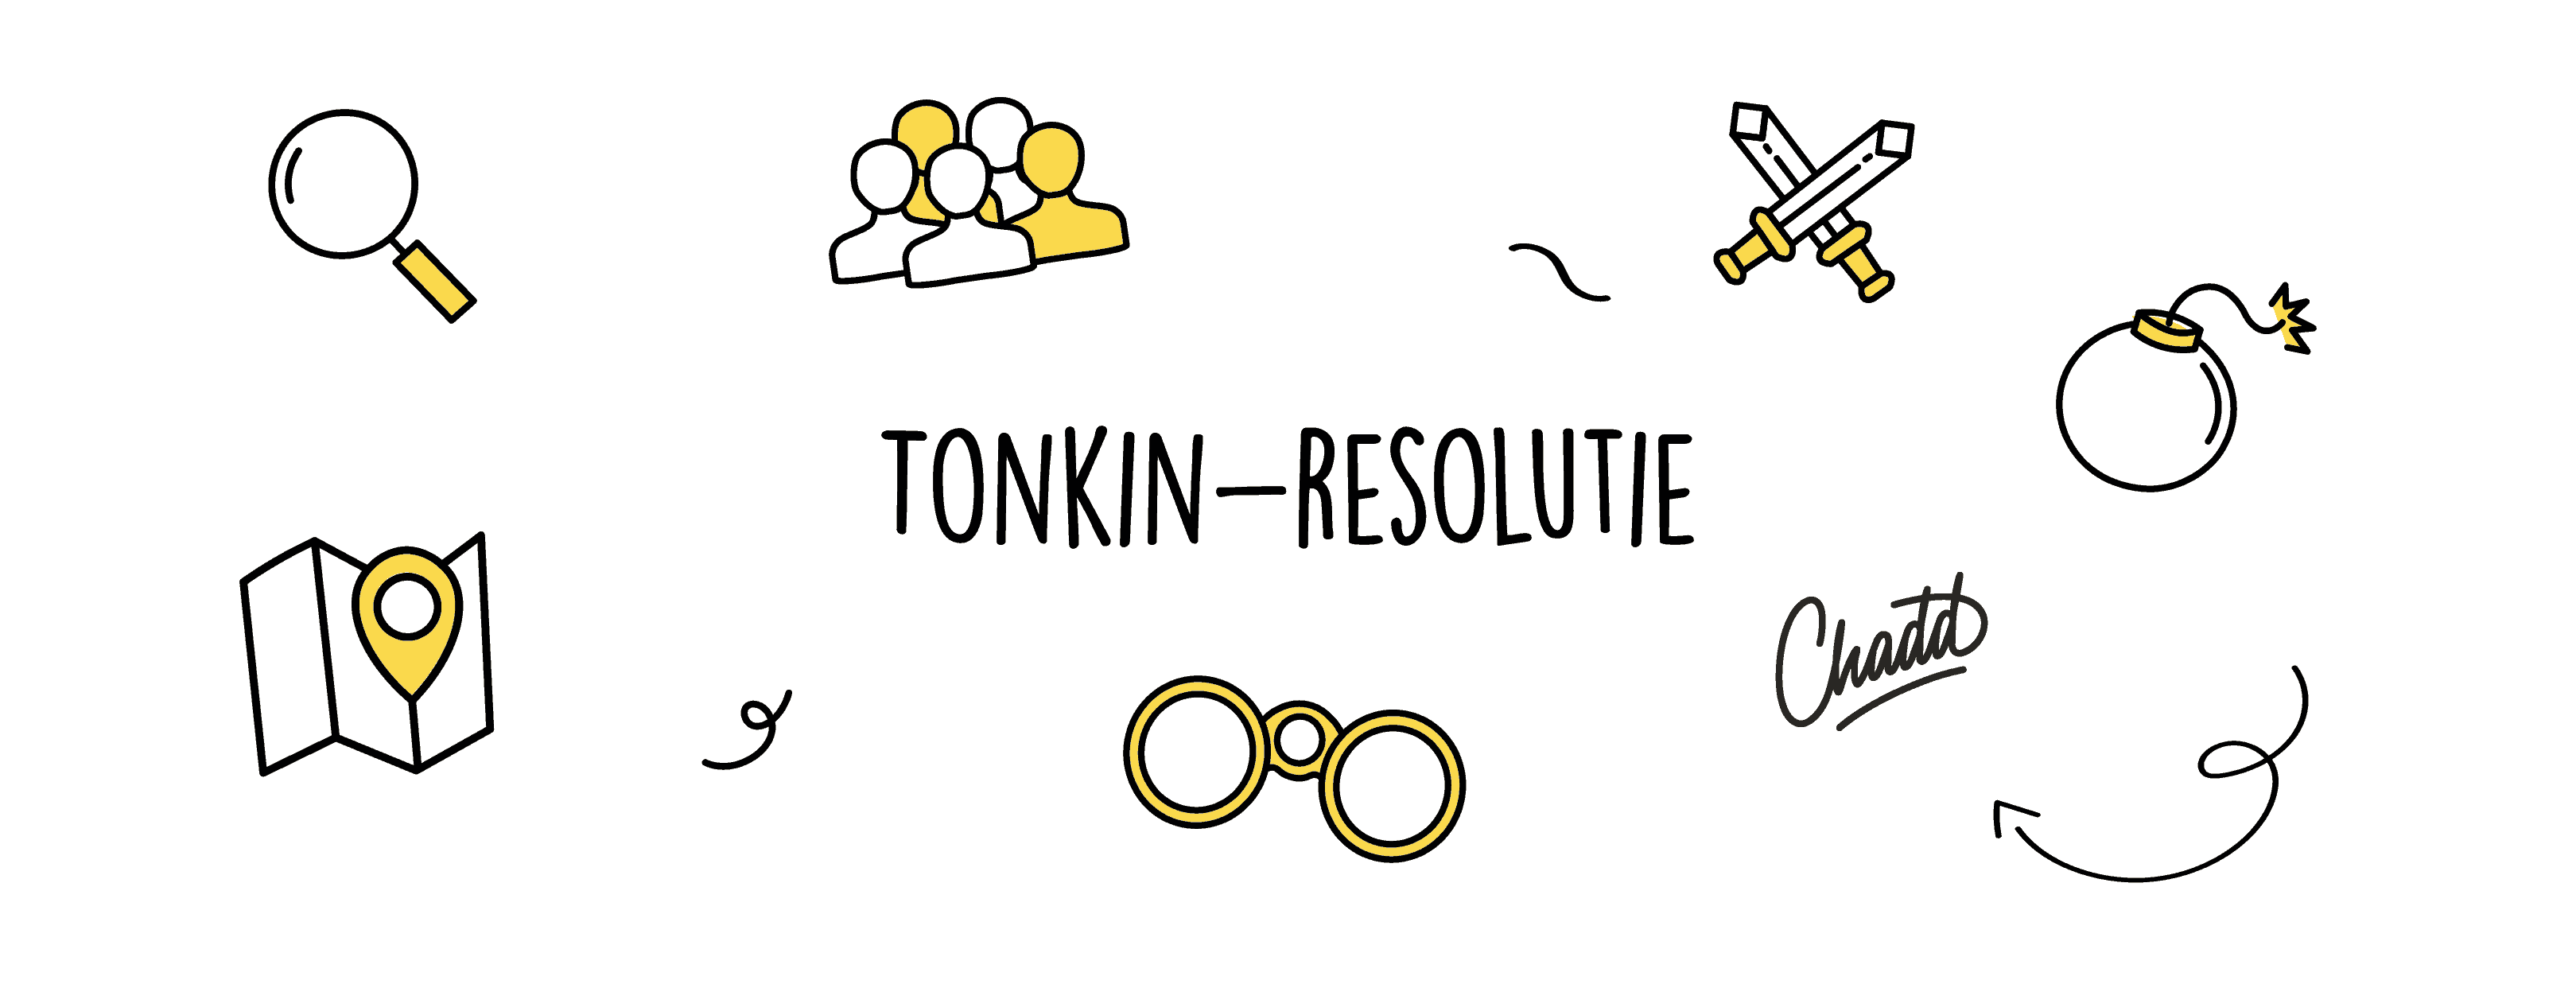 Tonkin resolutie